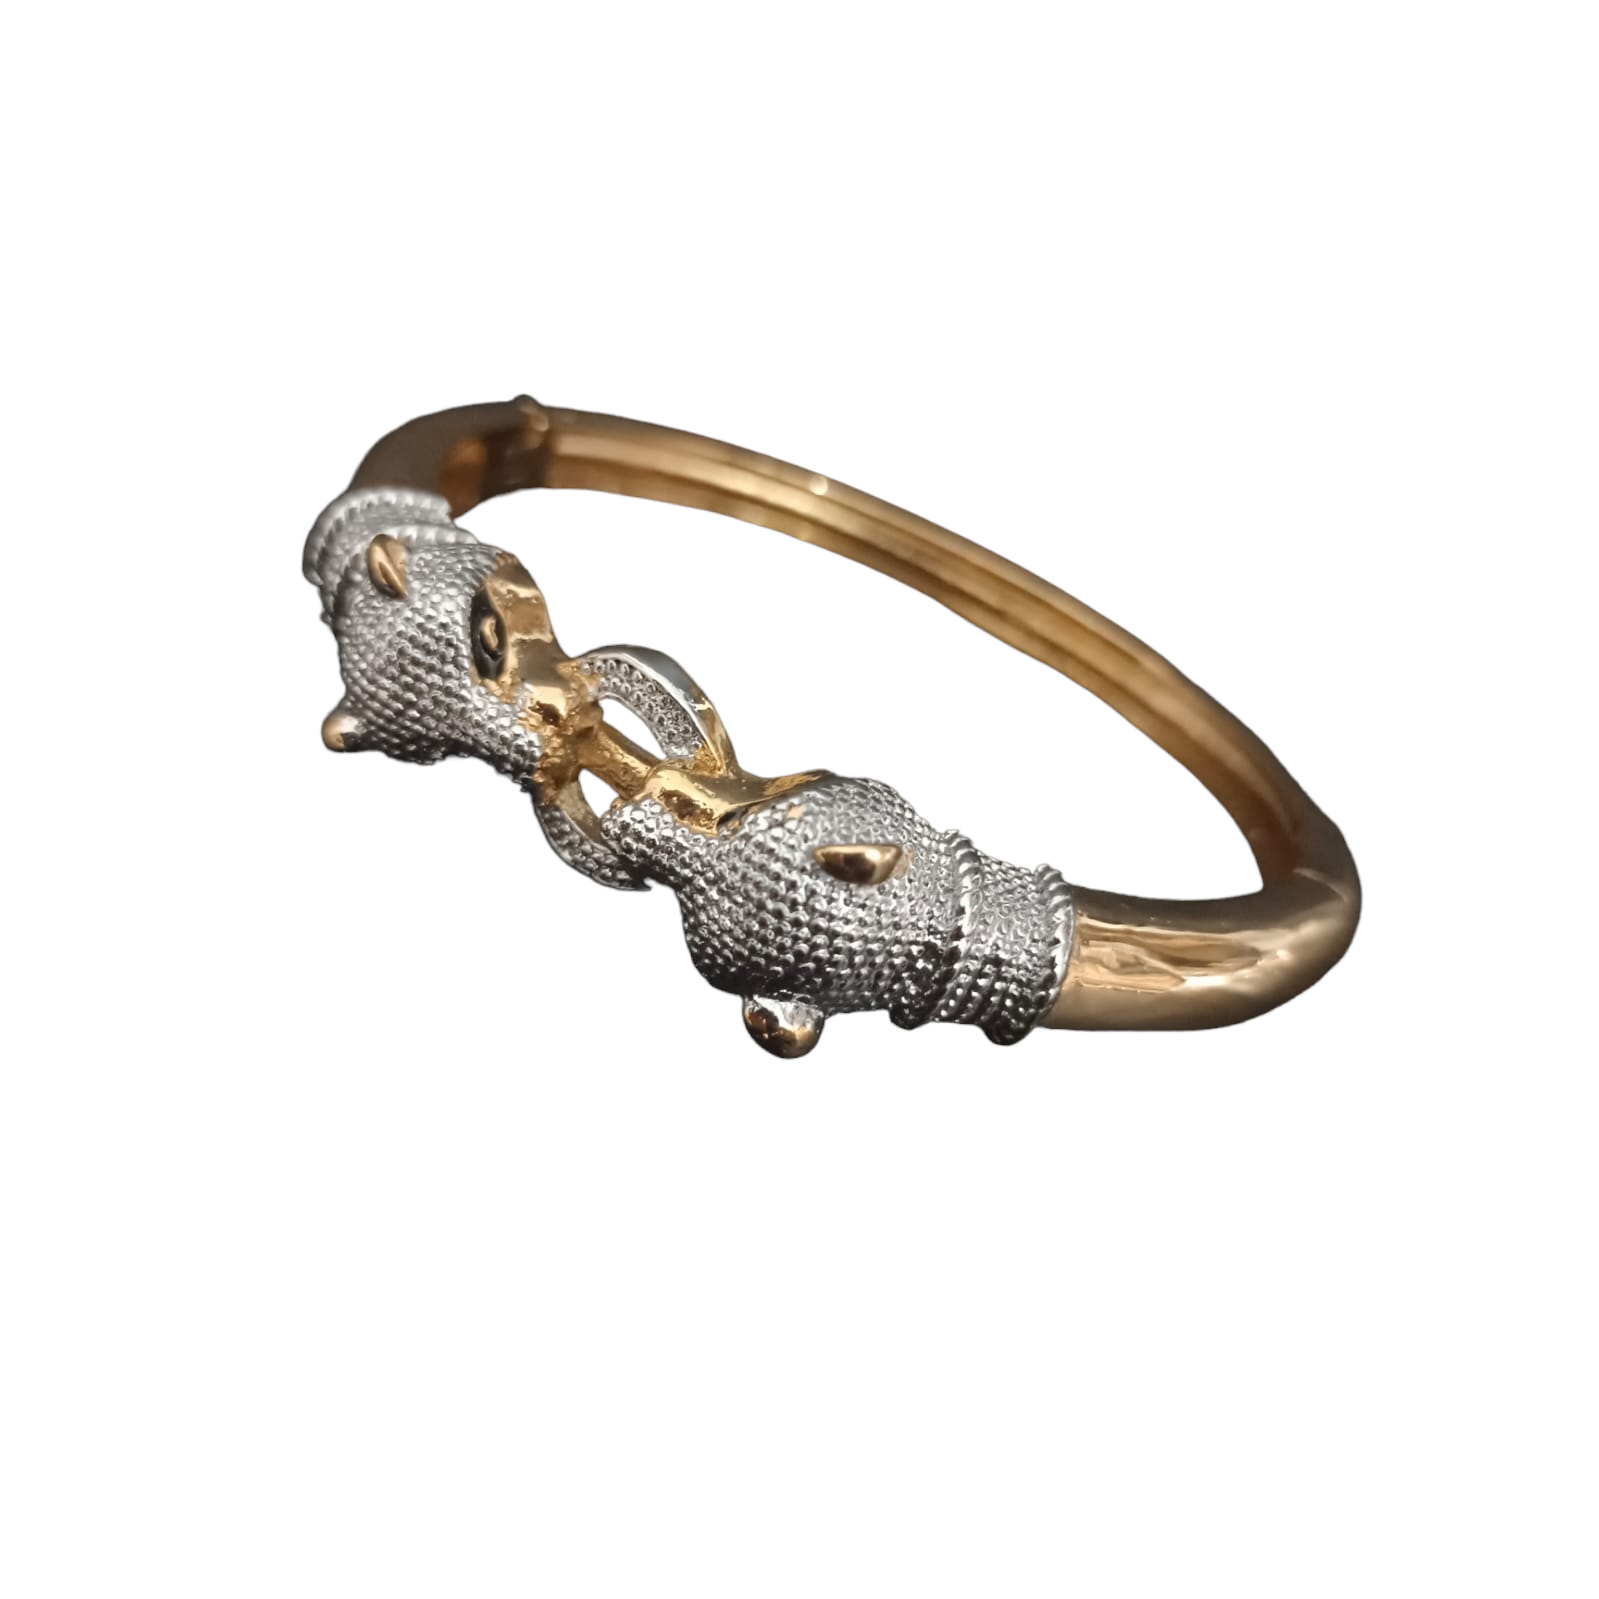 very big size hand made jaguar bracelet for men's | soni fashion rajkot |  Gold jewels design, Bracelets for men, Fashion